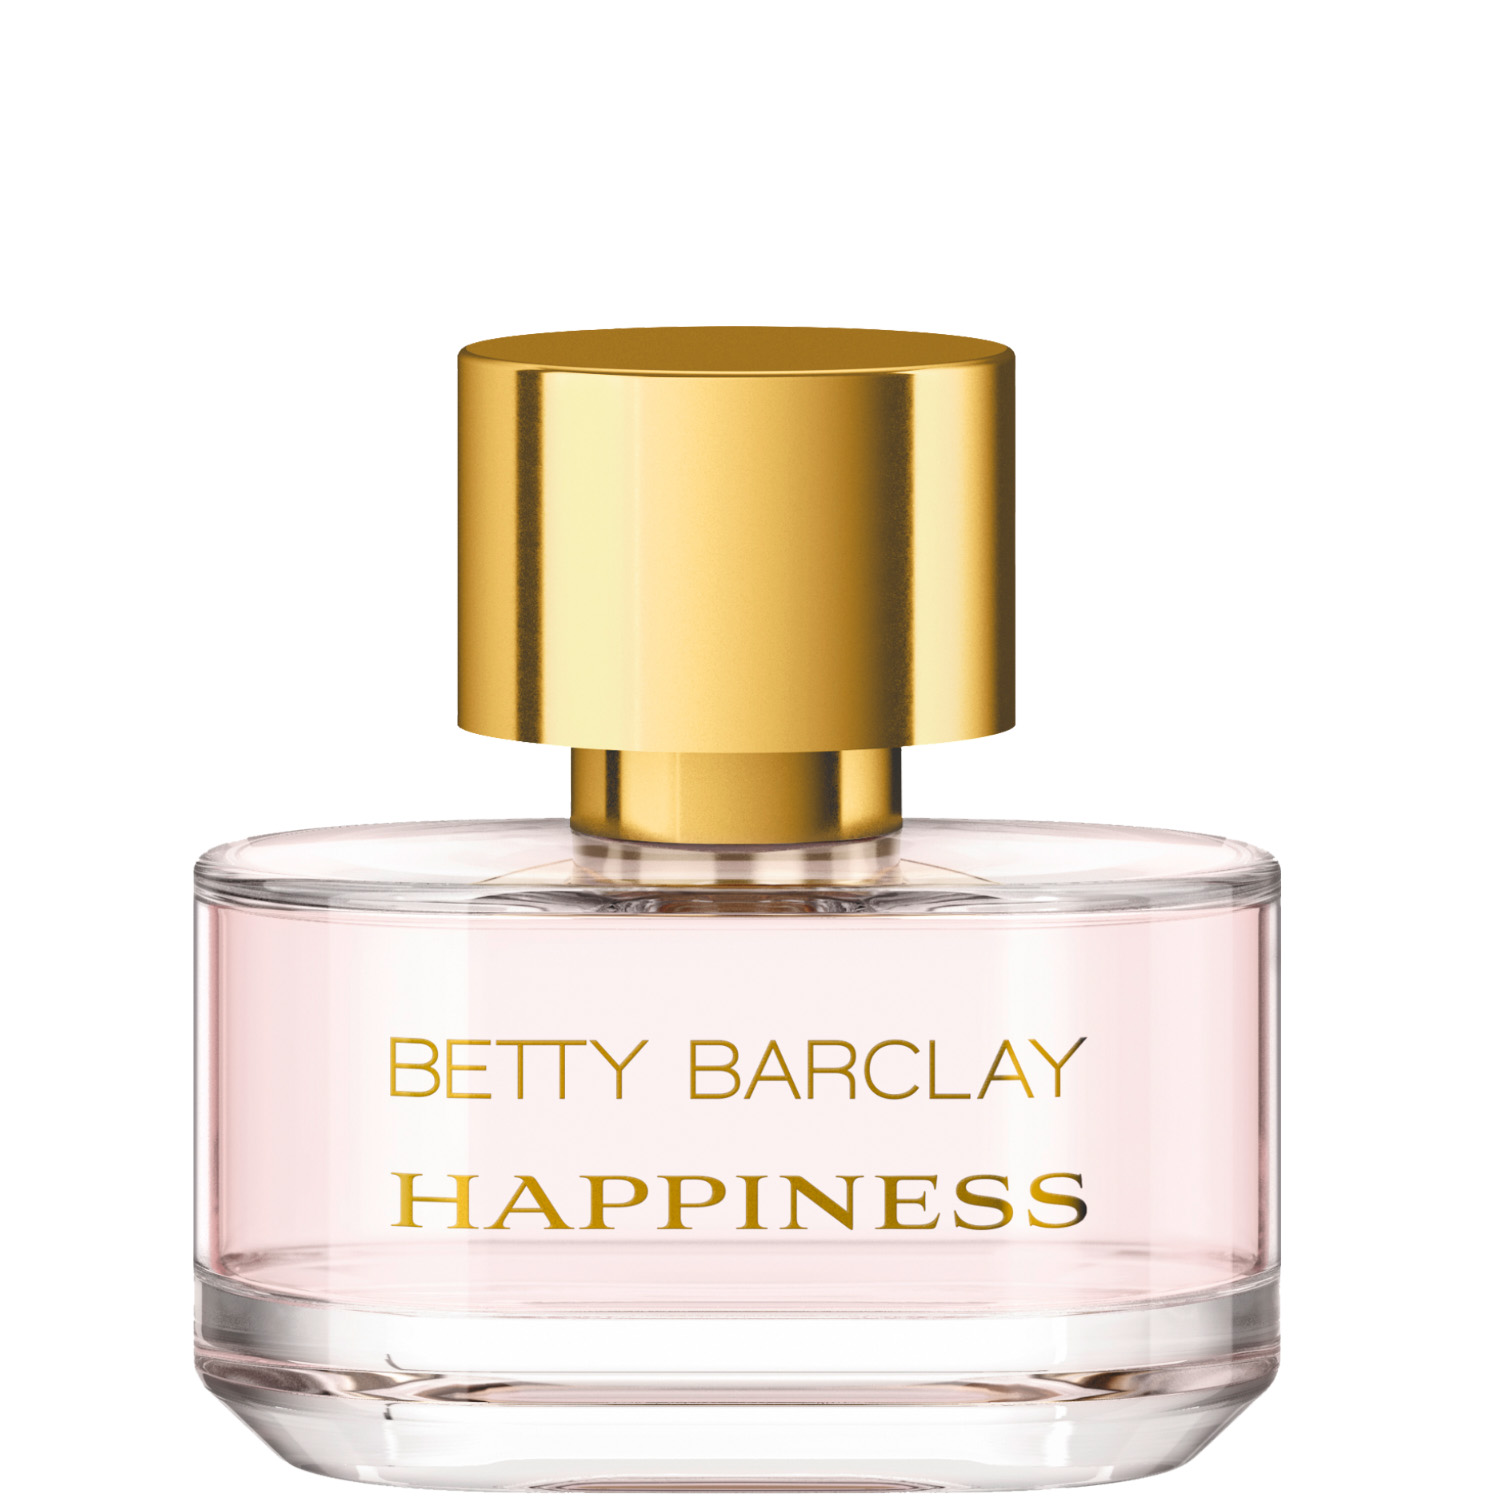 Betty Barclay Happiness Eau de Toilette 20ml